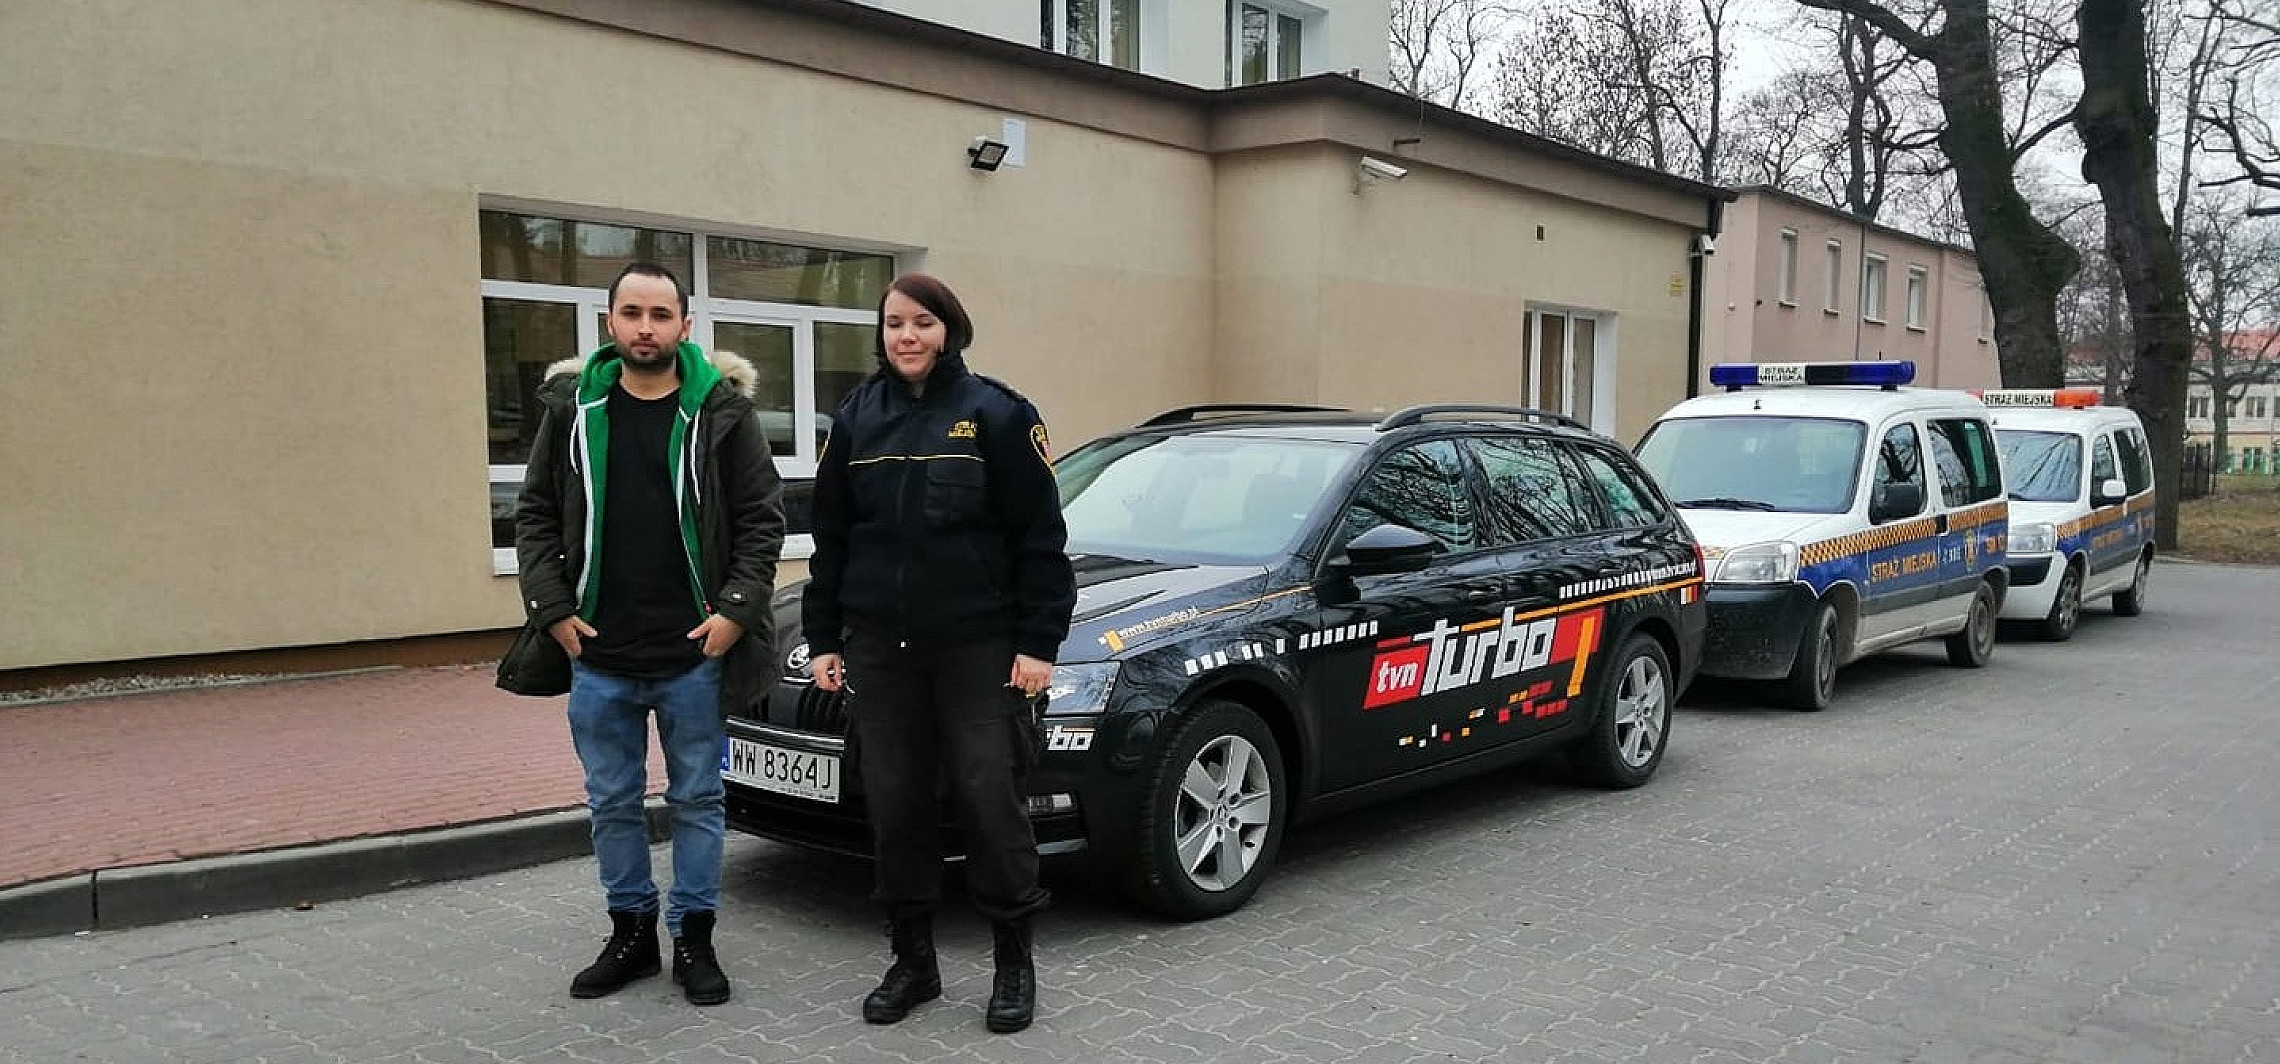 Inowrocław - TVN Turbo z wizytą w... straży miejskiej